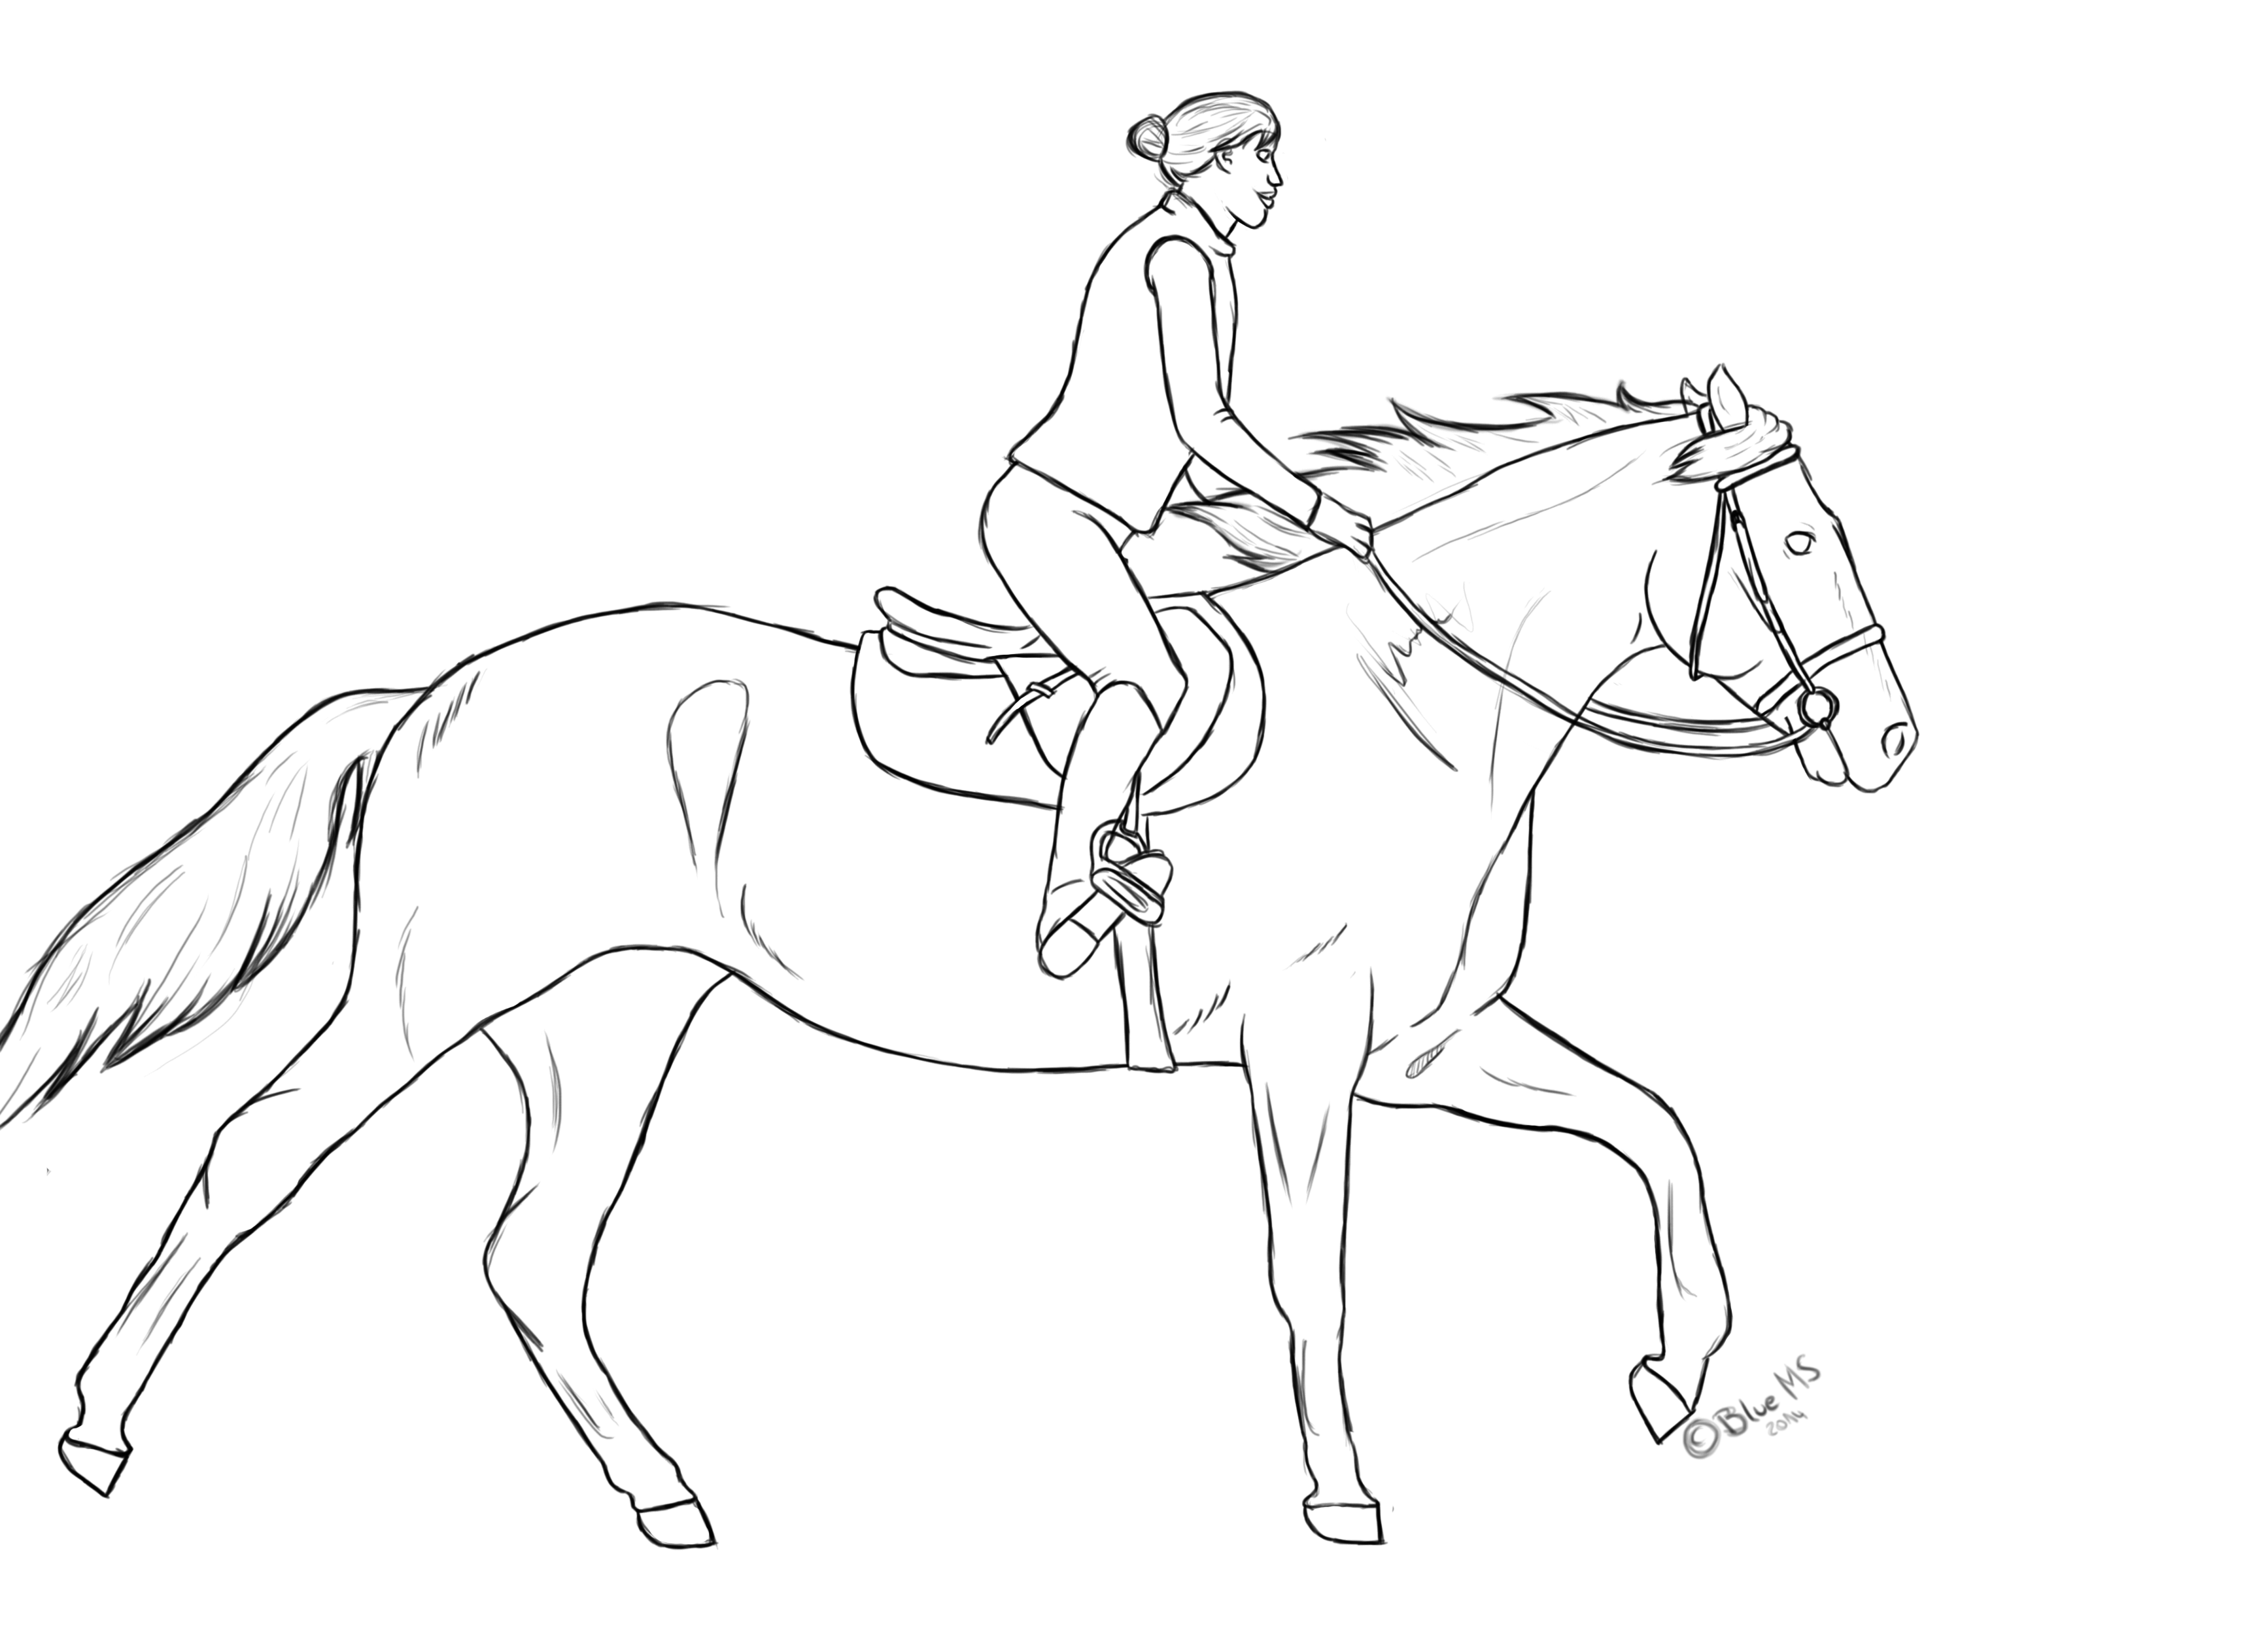 fallen horse sketch easy